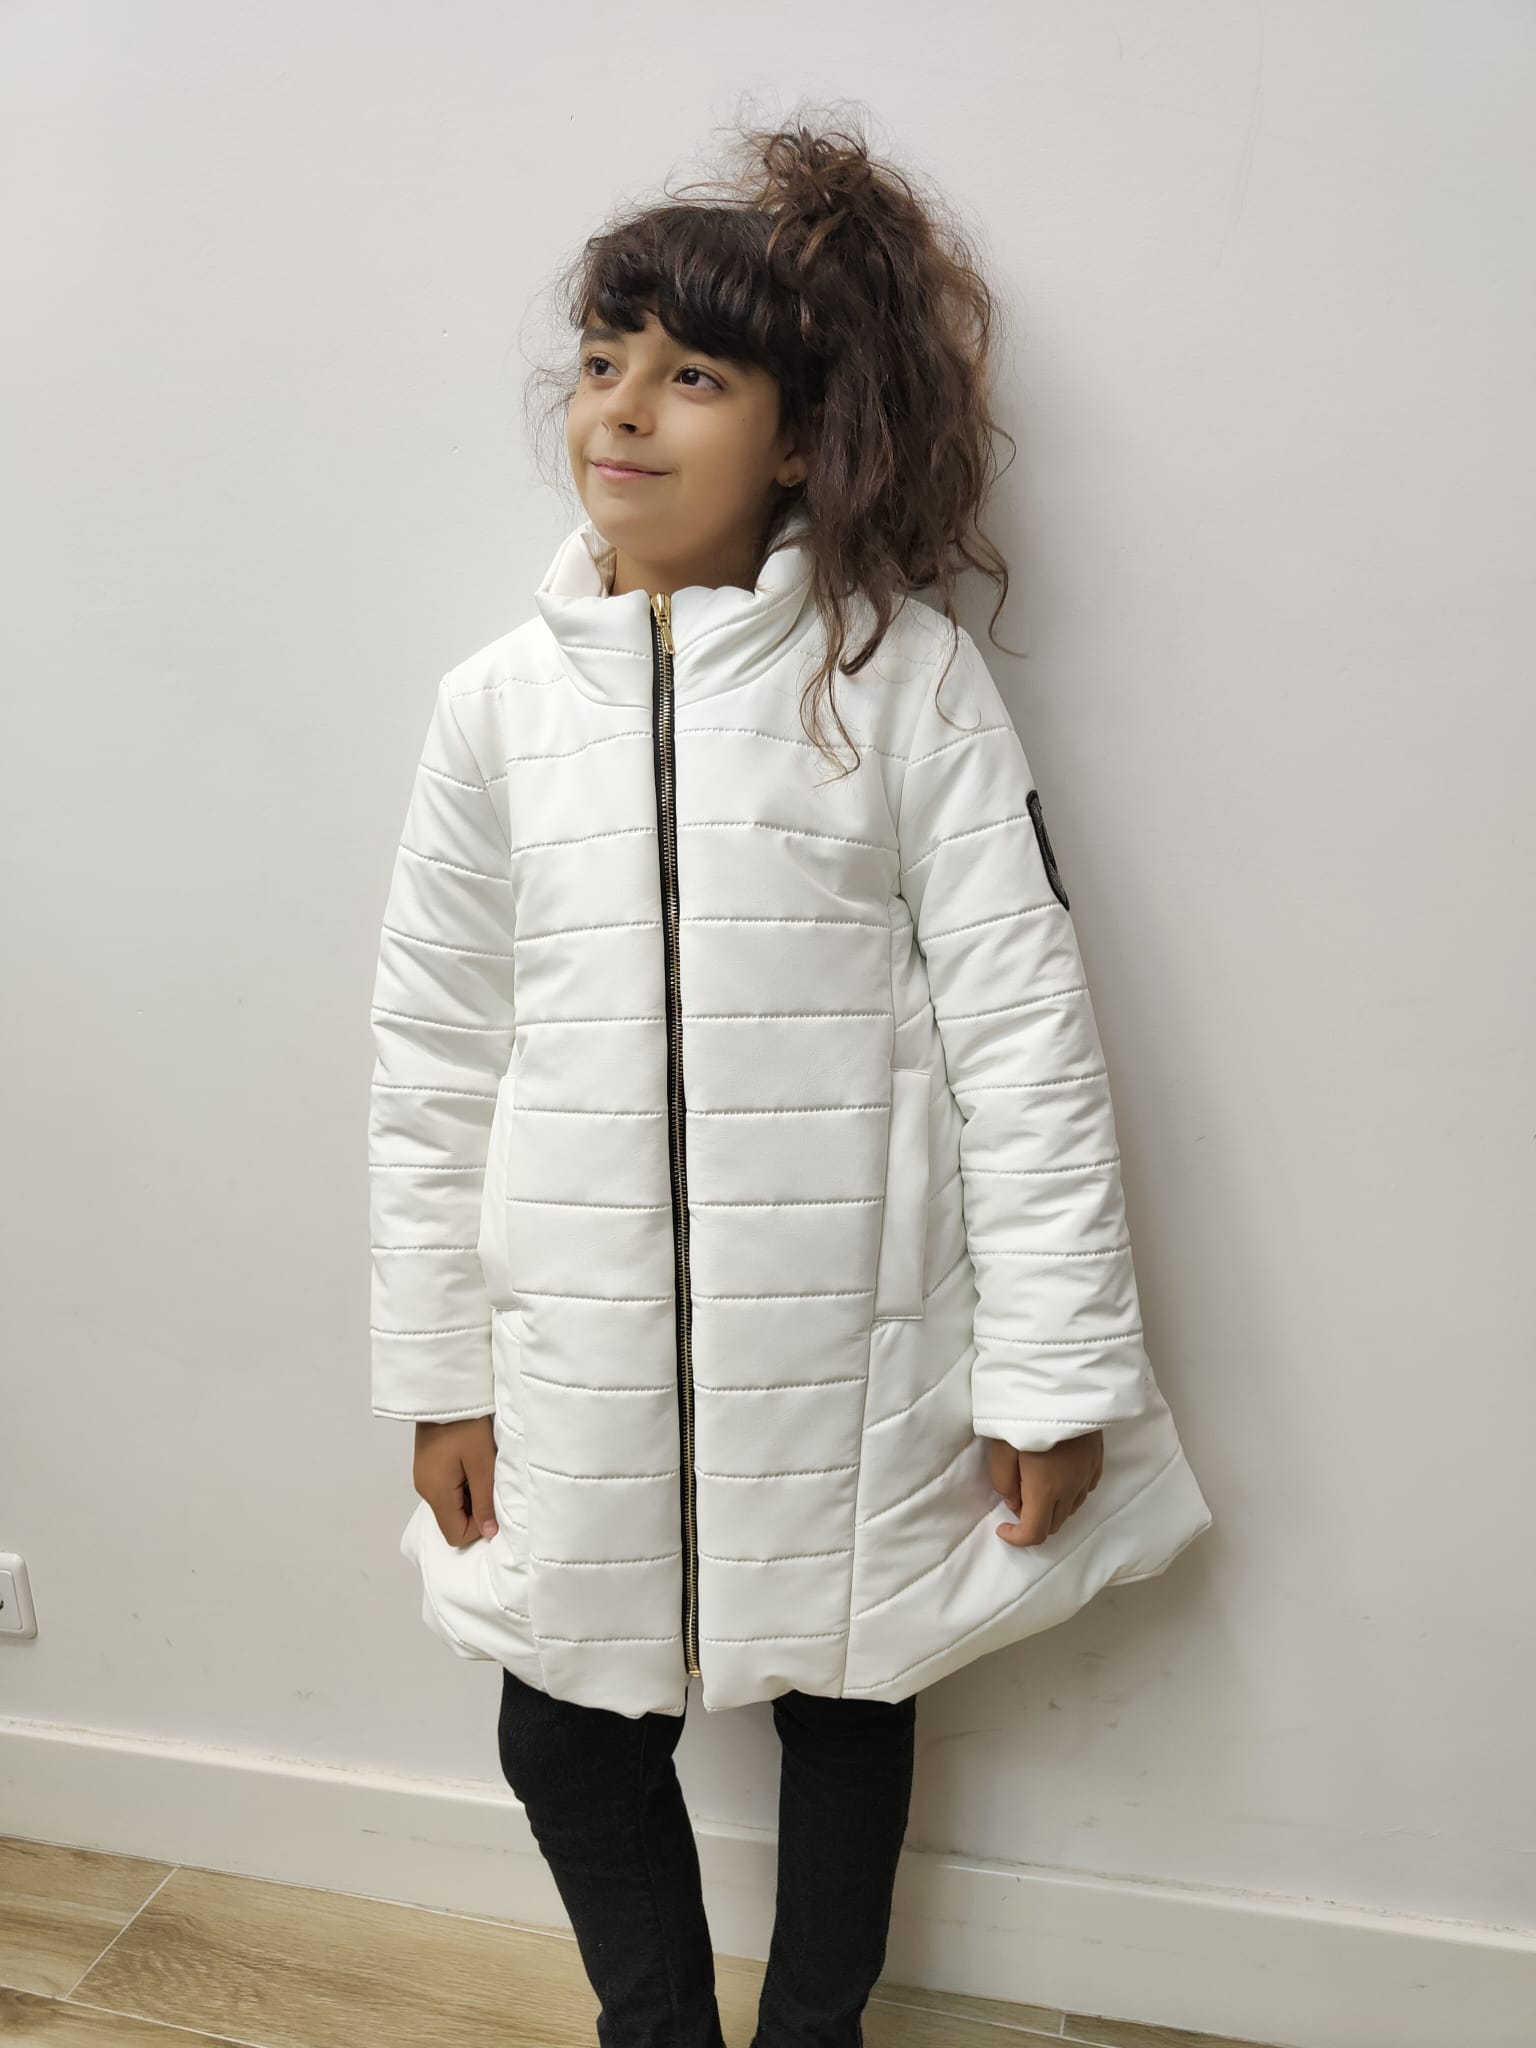 larga polipiel color blanco de NOMA FERNANDEZ, invierno 2021 | Ropa Moda Infantil